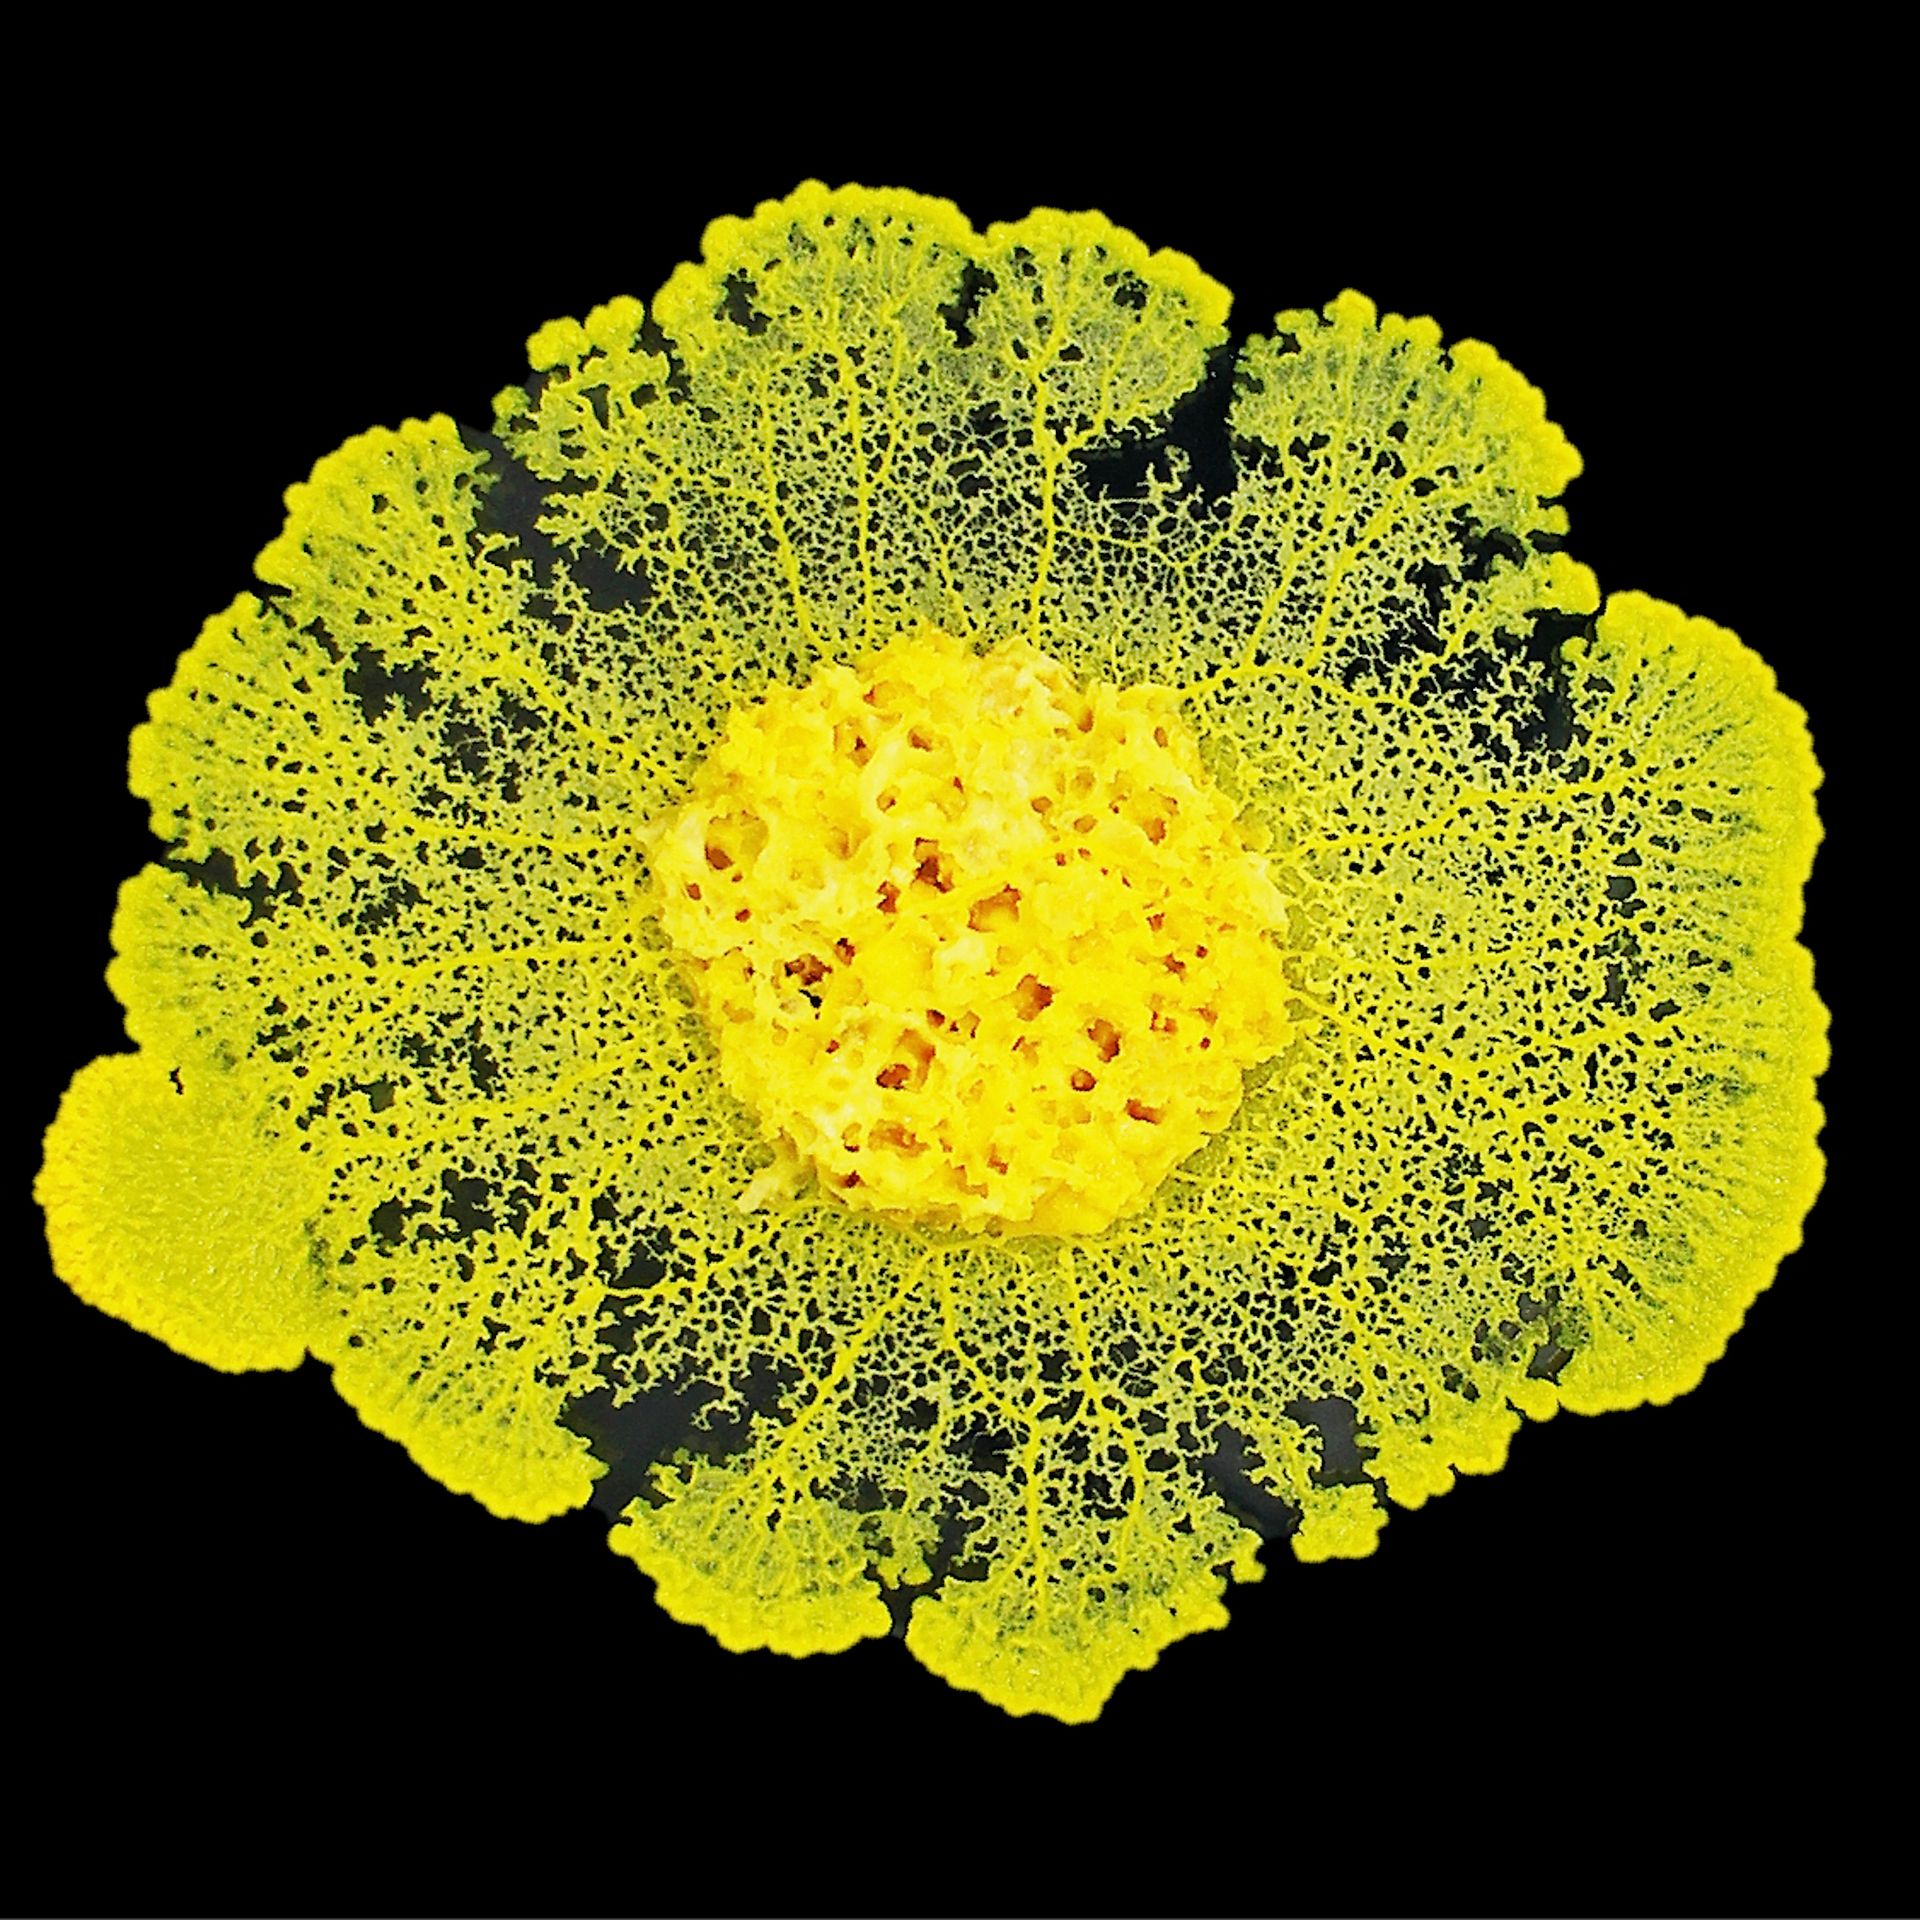 Physarum polycephalum, populairement appelé Blob, l’organisme vivant qui accompagnera Pesquet lors de la mission "Alpha" dans l’ISS.